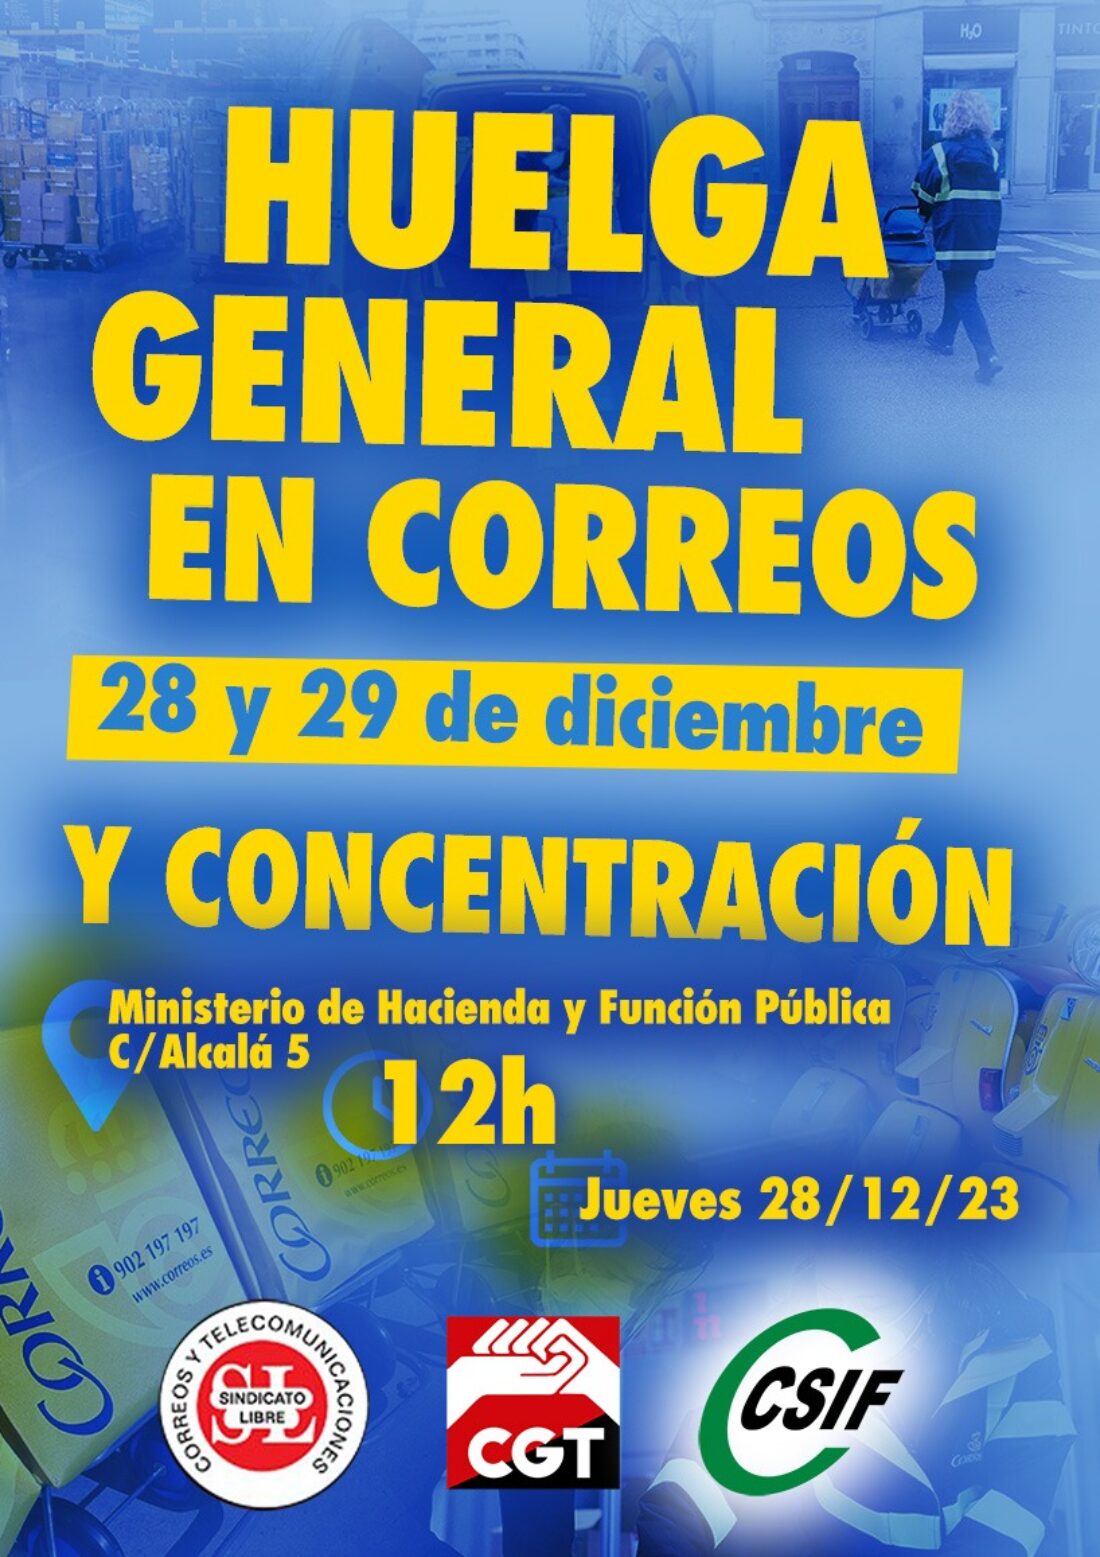 Huelga en Correos Madrid 28 y 29 diciembre